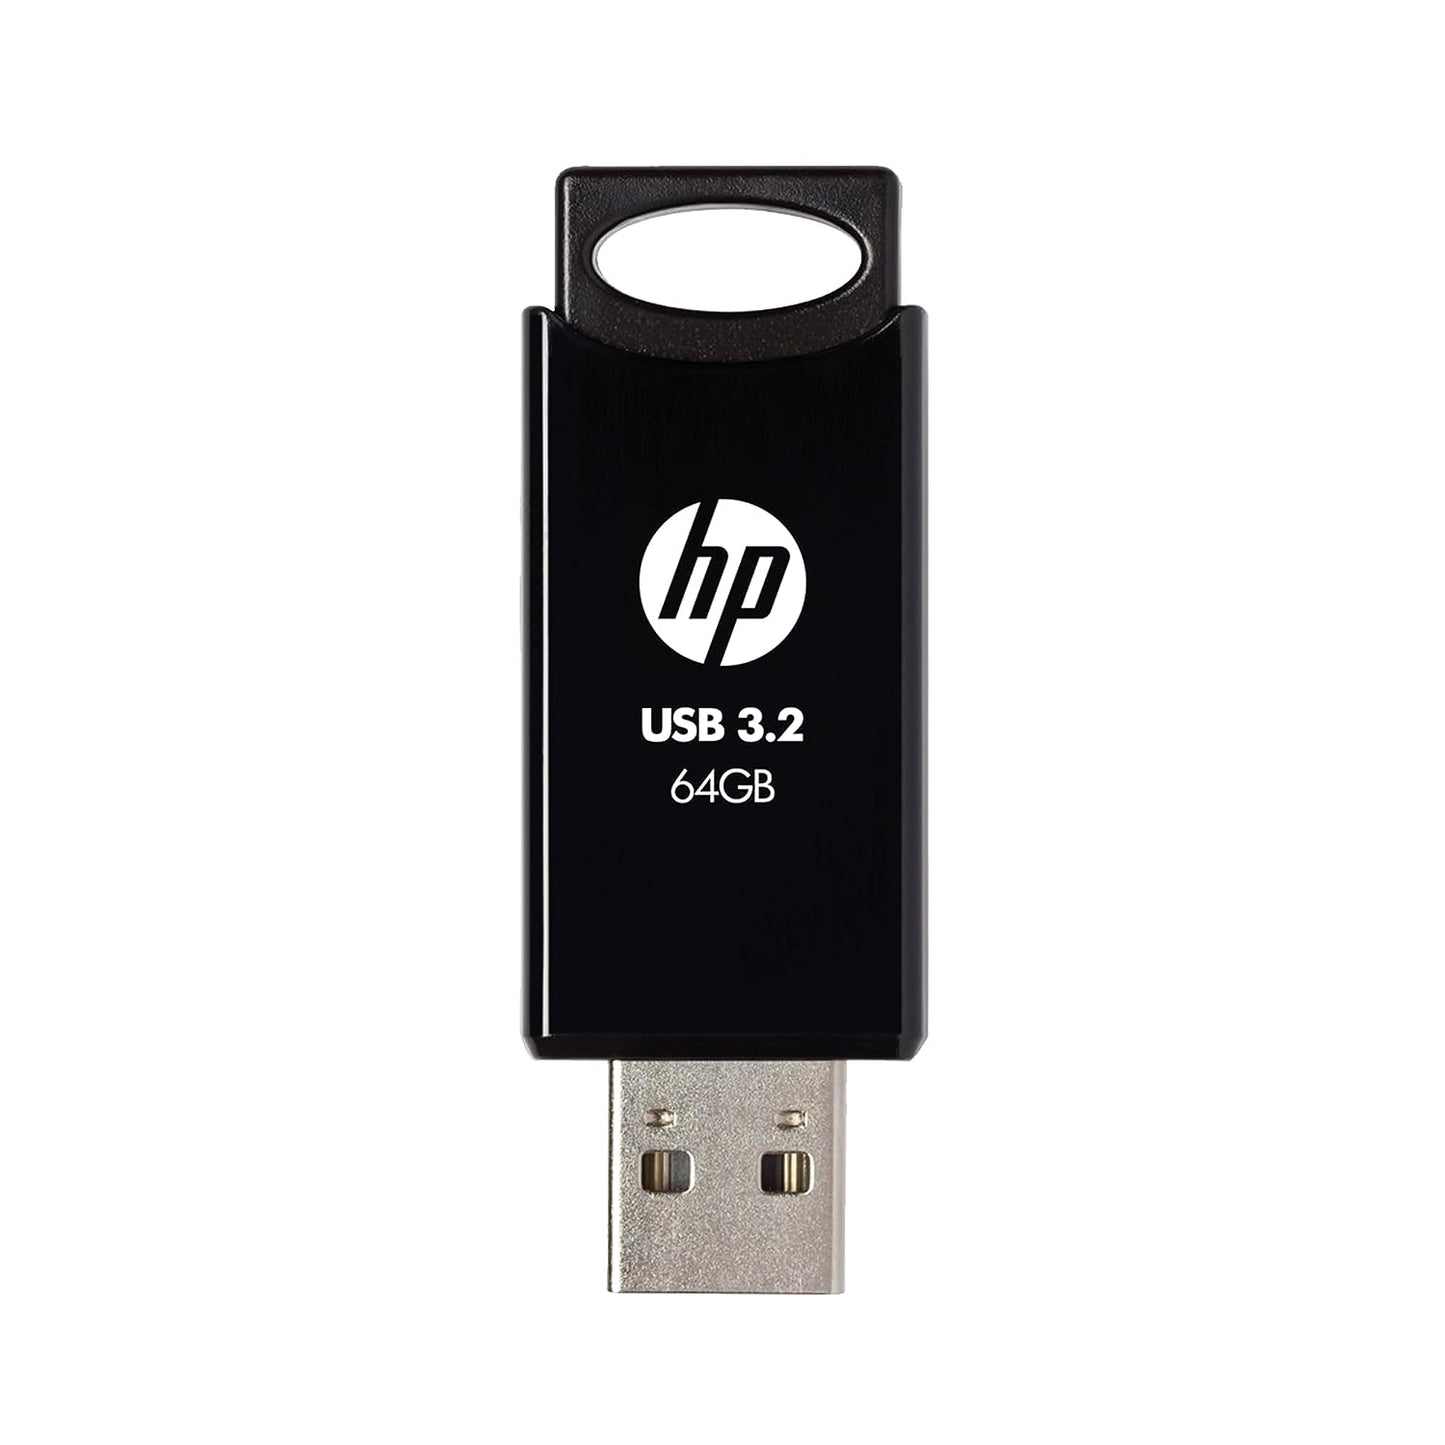 HP 64 GB 712w USB 3.2 Flash Drive - Black